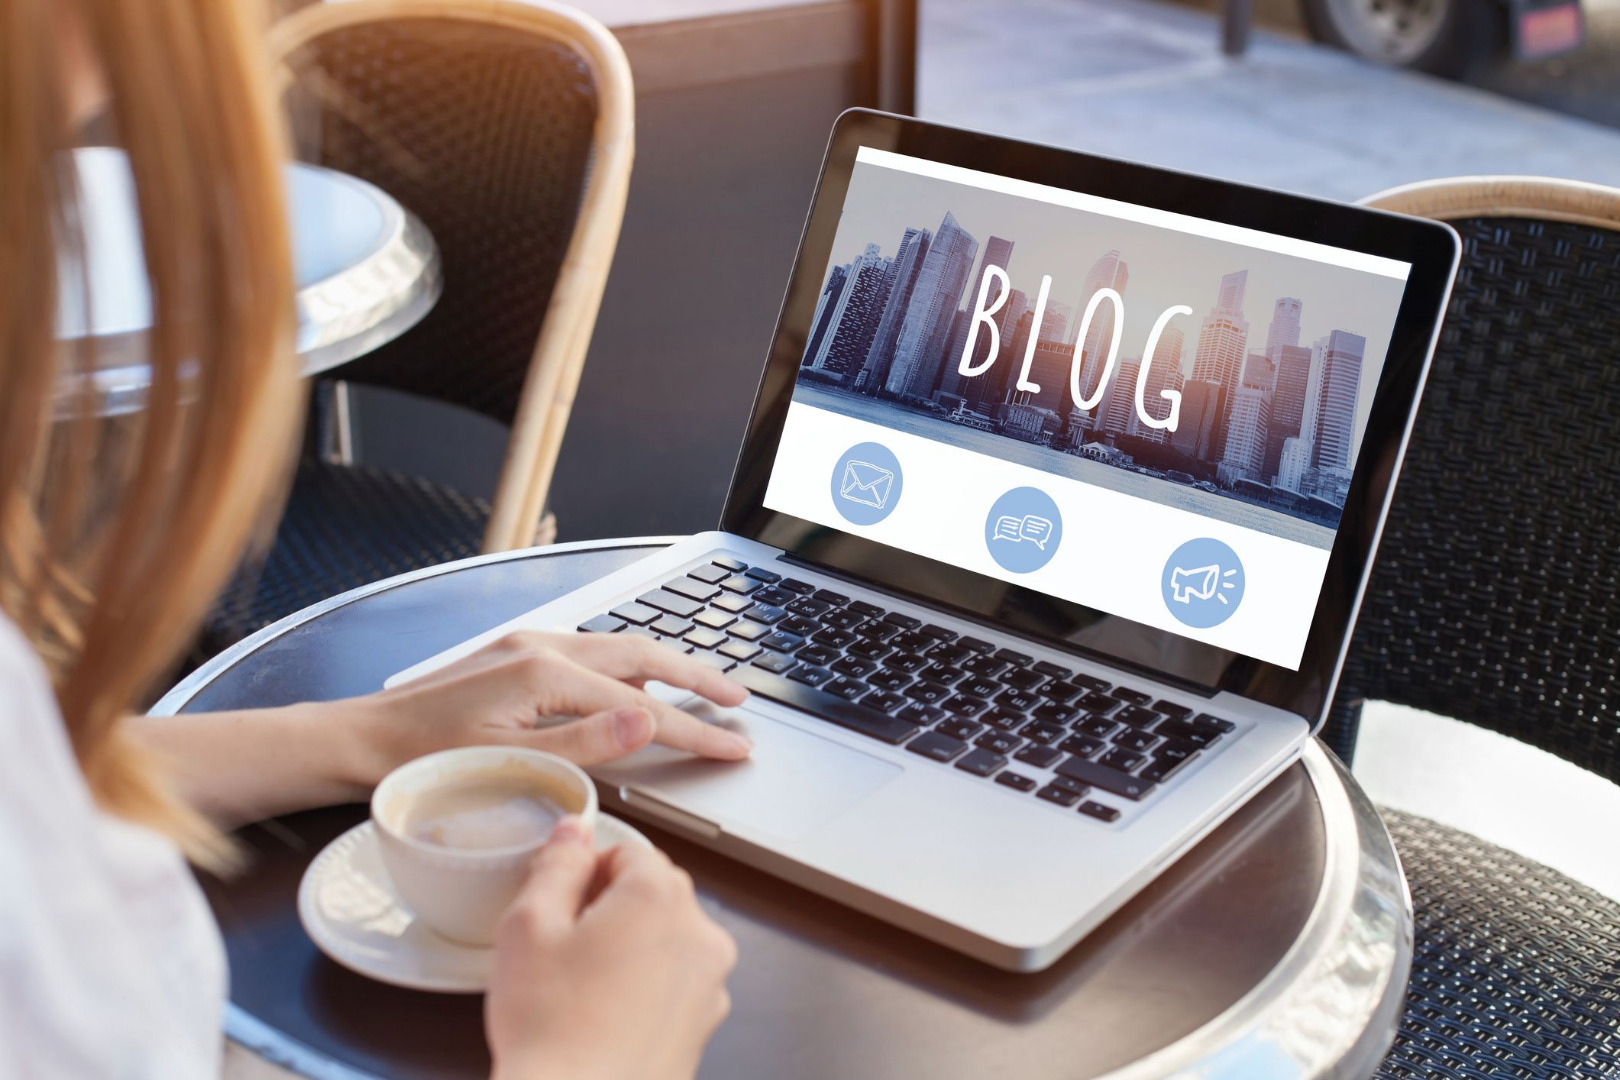 خدمات بلاگنویسی چطور آغاز می شود؟